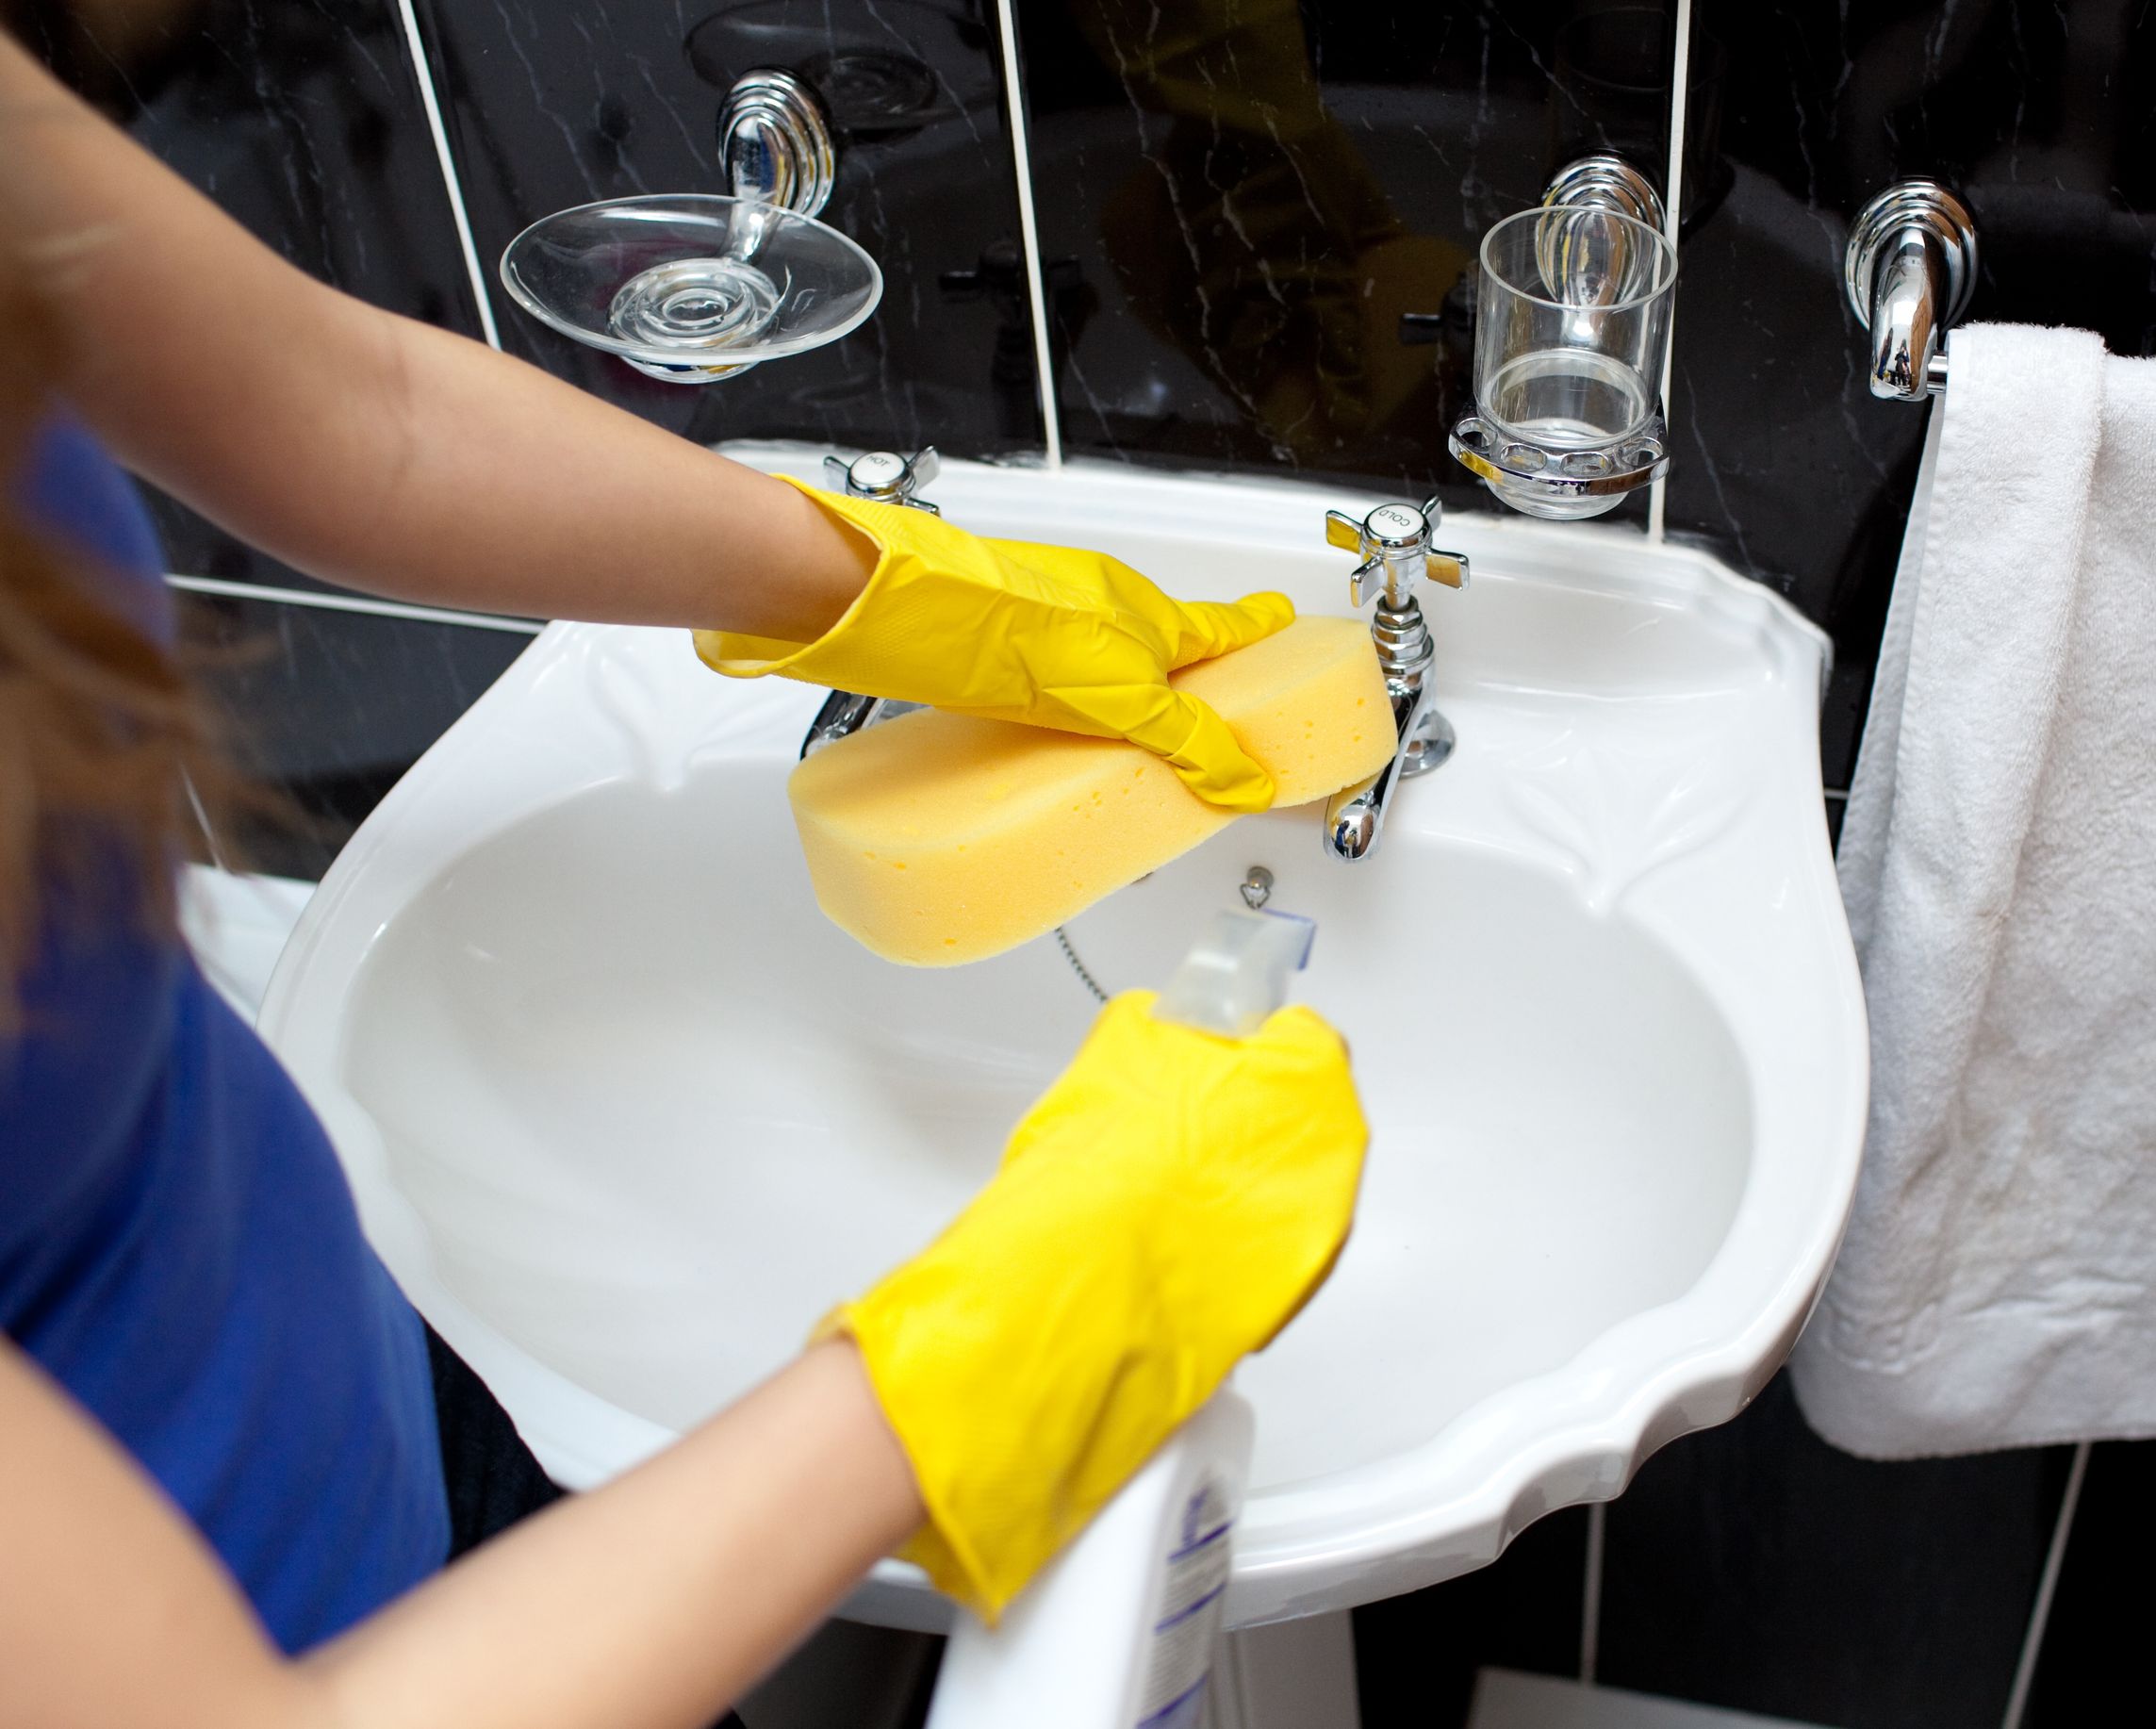 Почистить ванну домашними средствами. Мытье раковины. Уборка в ванной. Мытье ванной комнаты. Клининг ванной.